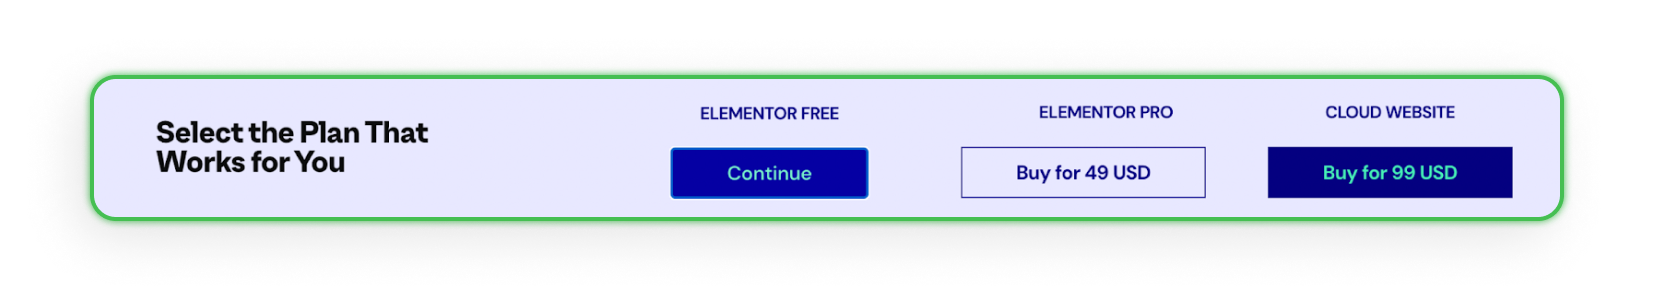 Elementor. Версии Elementor на выбор.